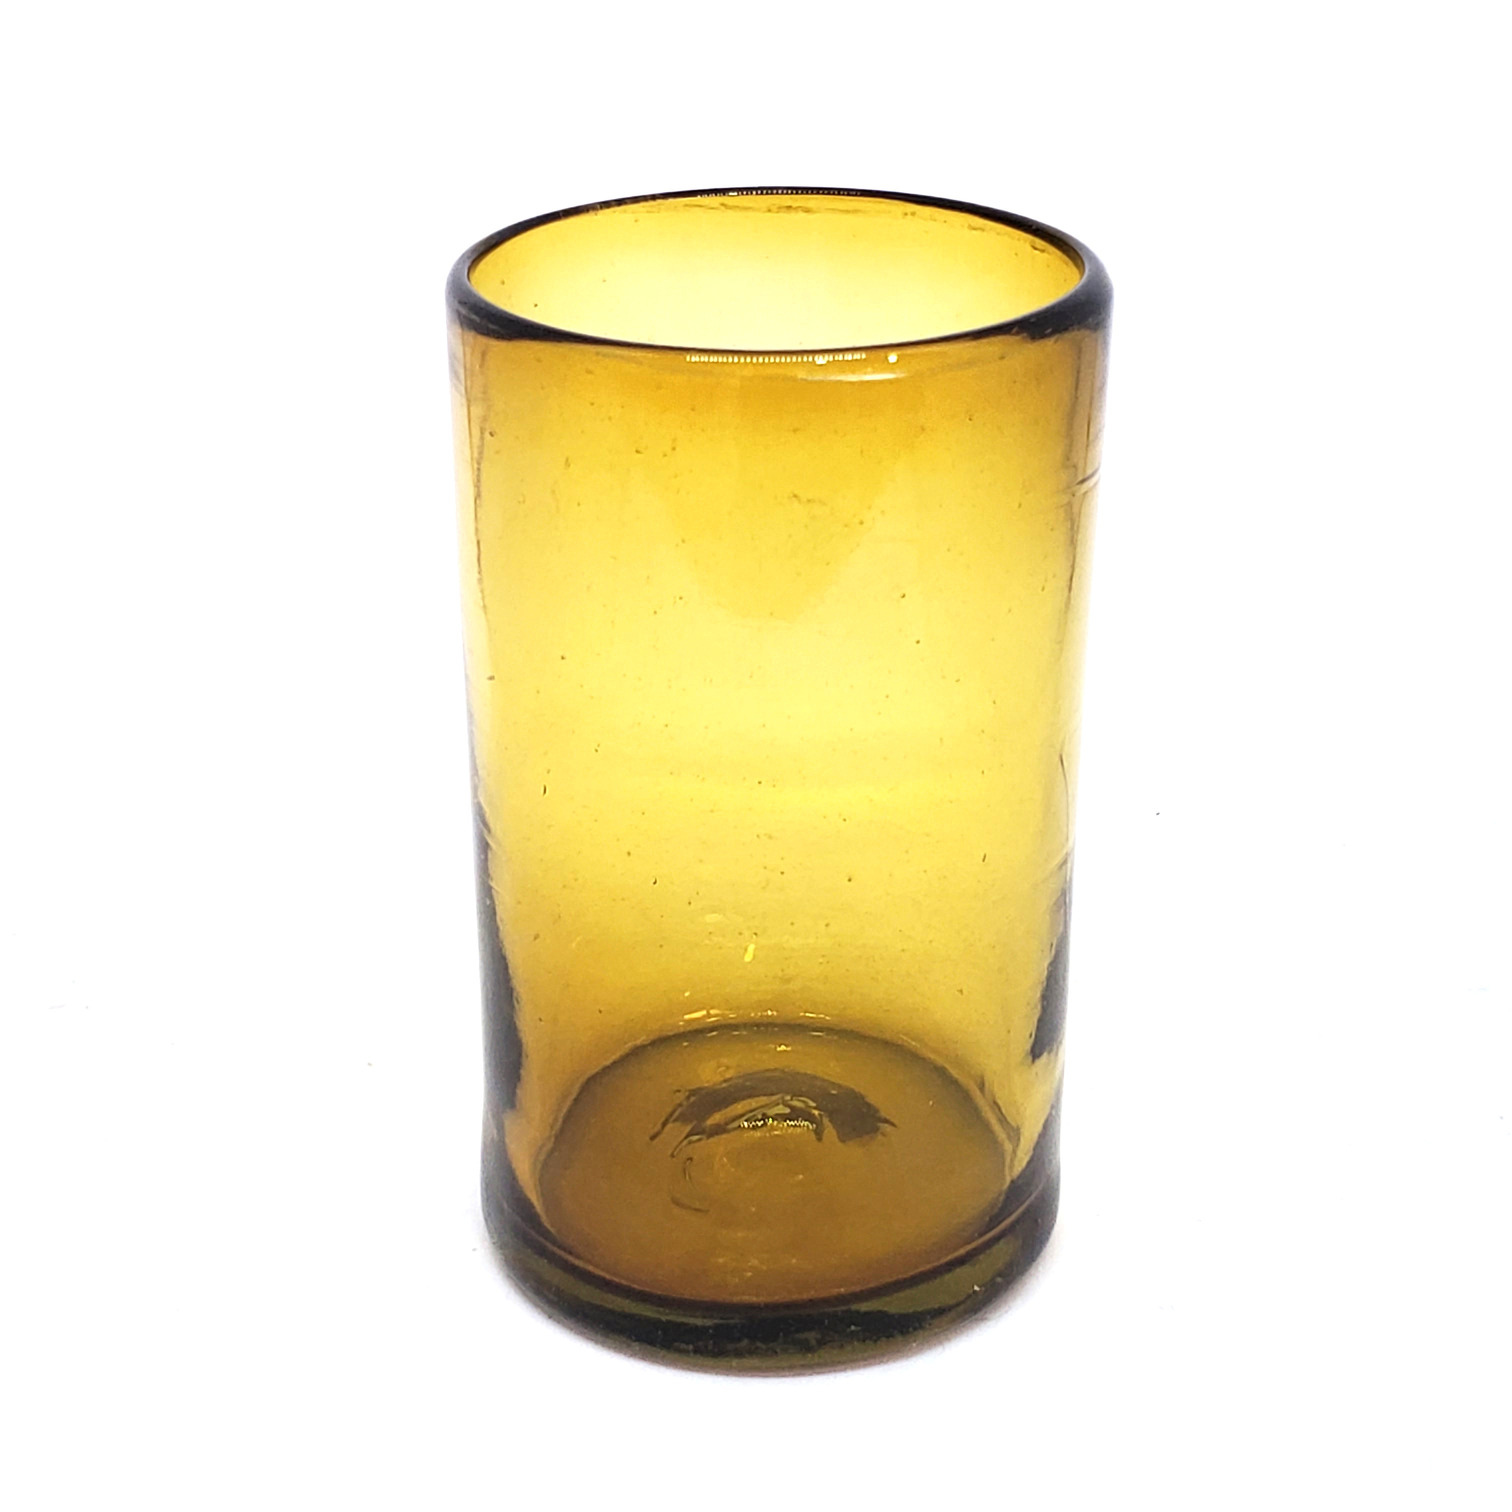 Novedades / Juego de 6 vasos grandes color ambar / �stos artesanales vasos le dar�n un toque cl�sico a su bebida favorita.